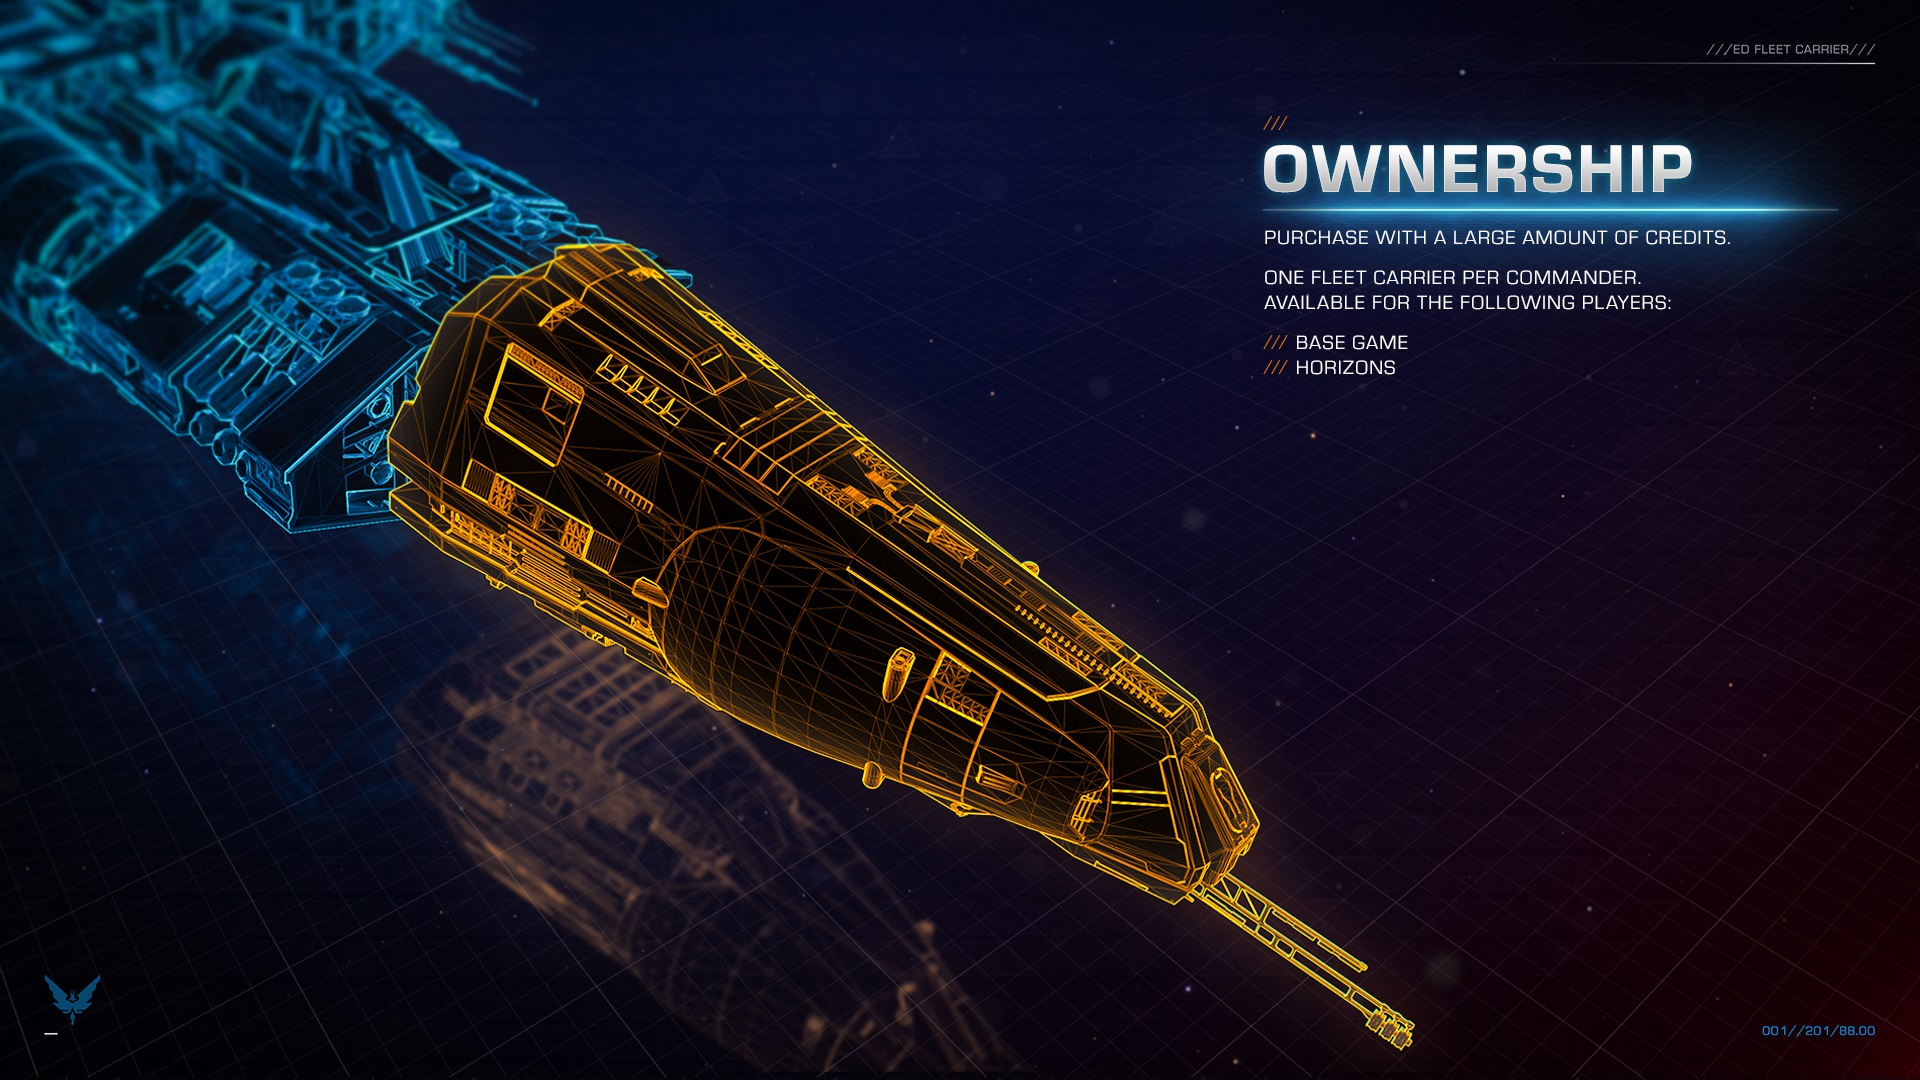 Frontier reveals Elite: Dangerous launch price